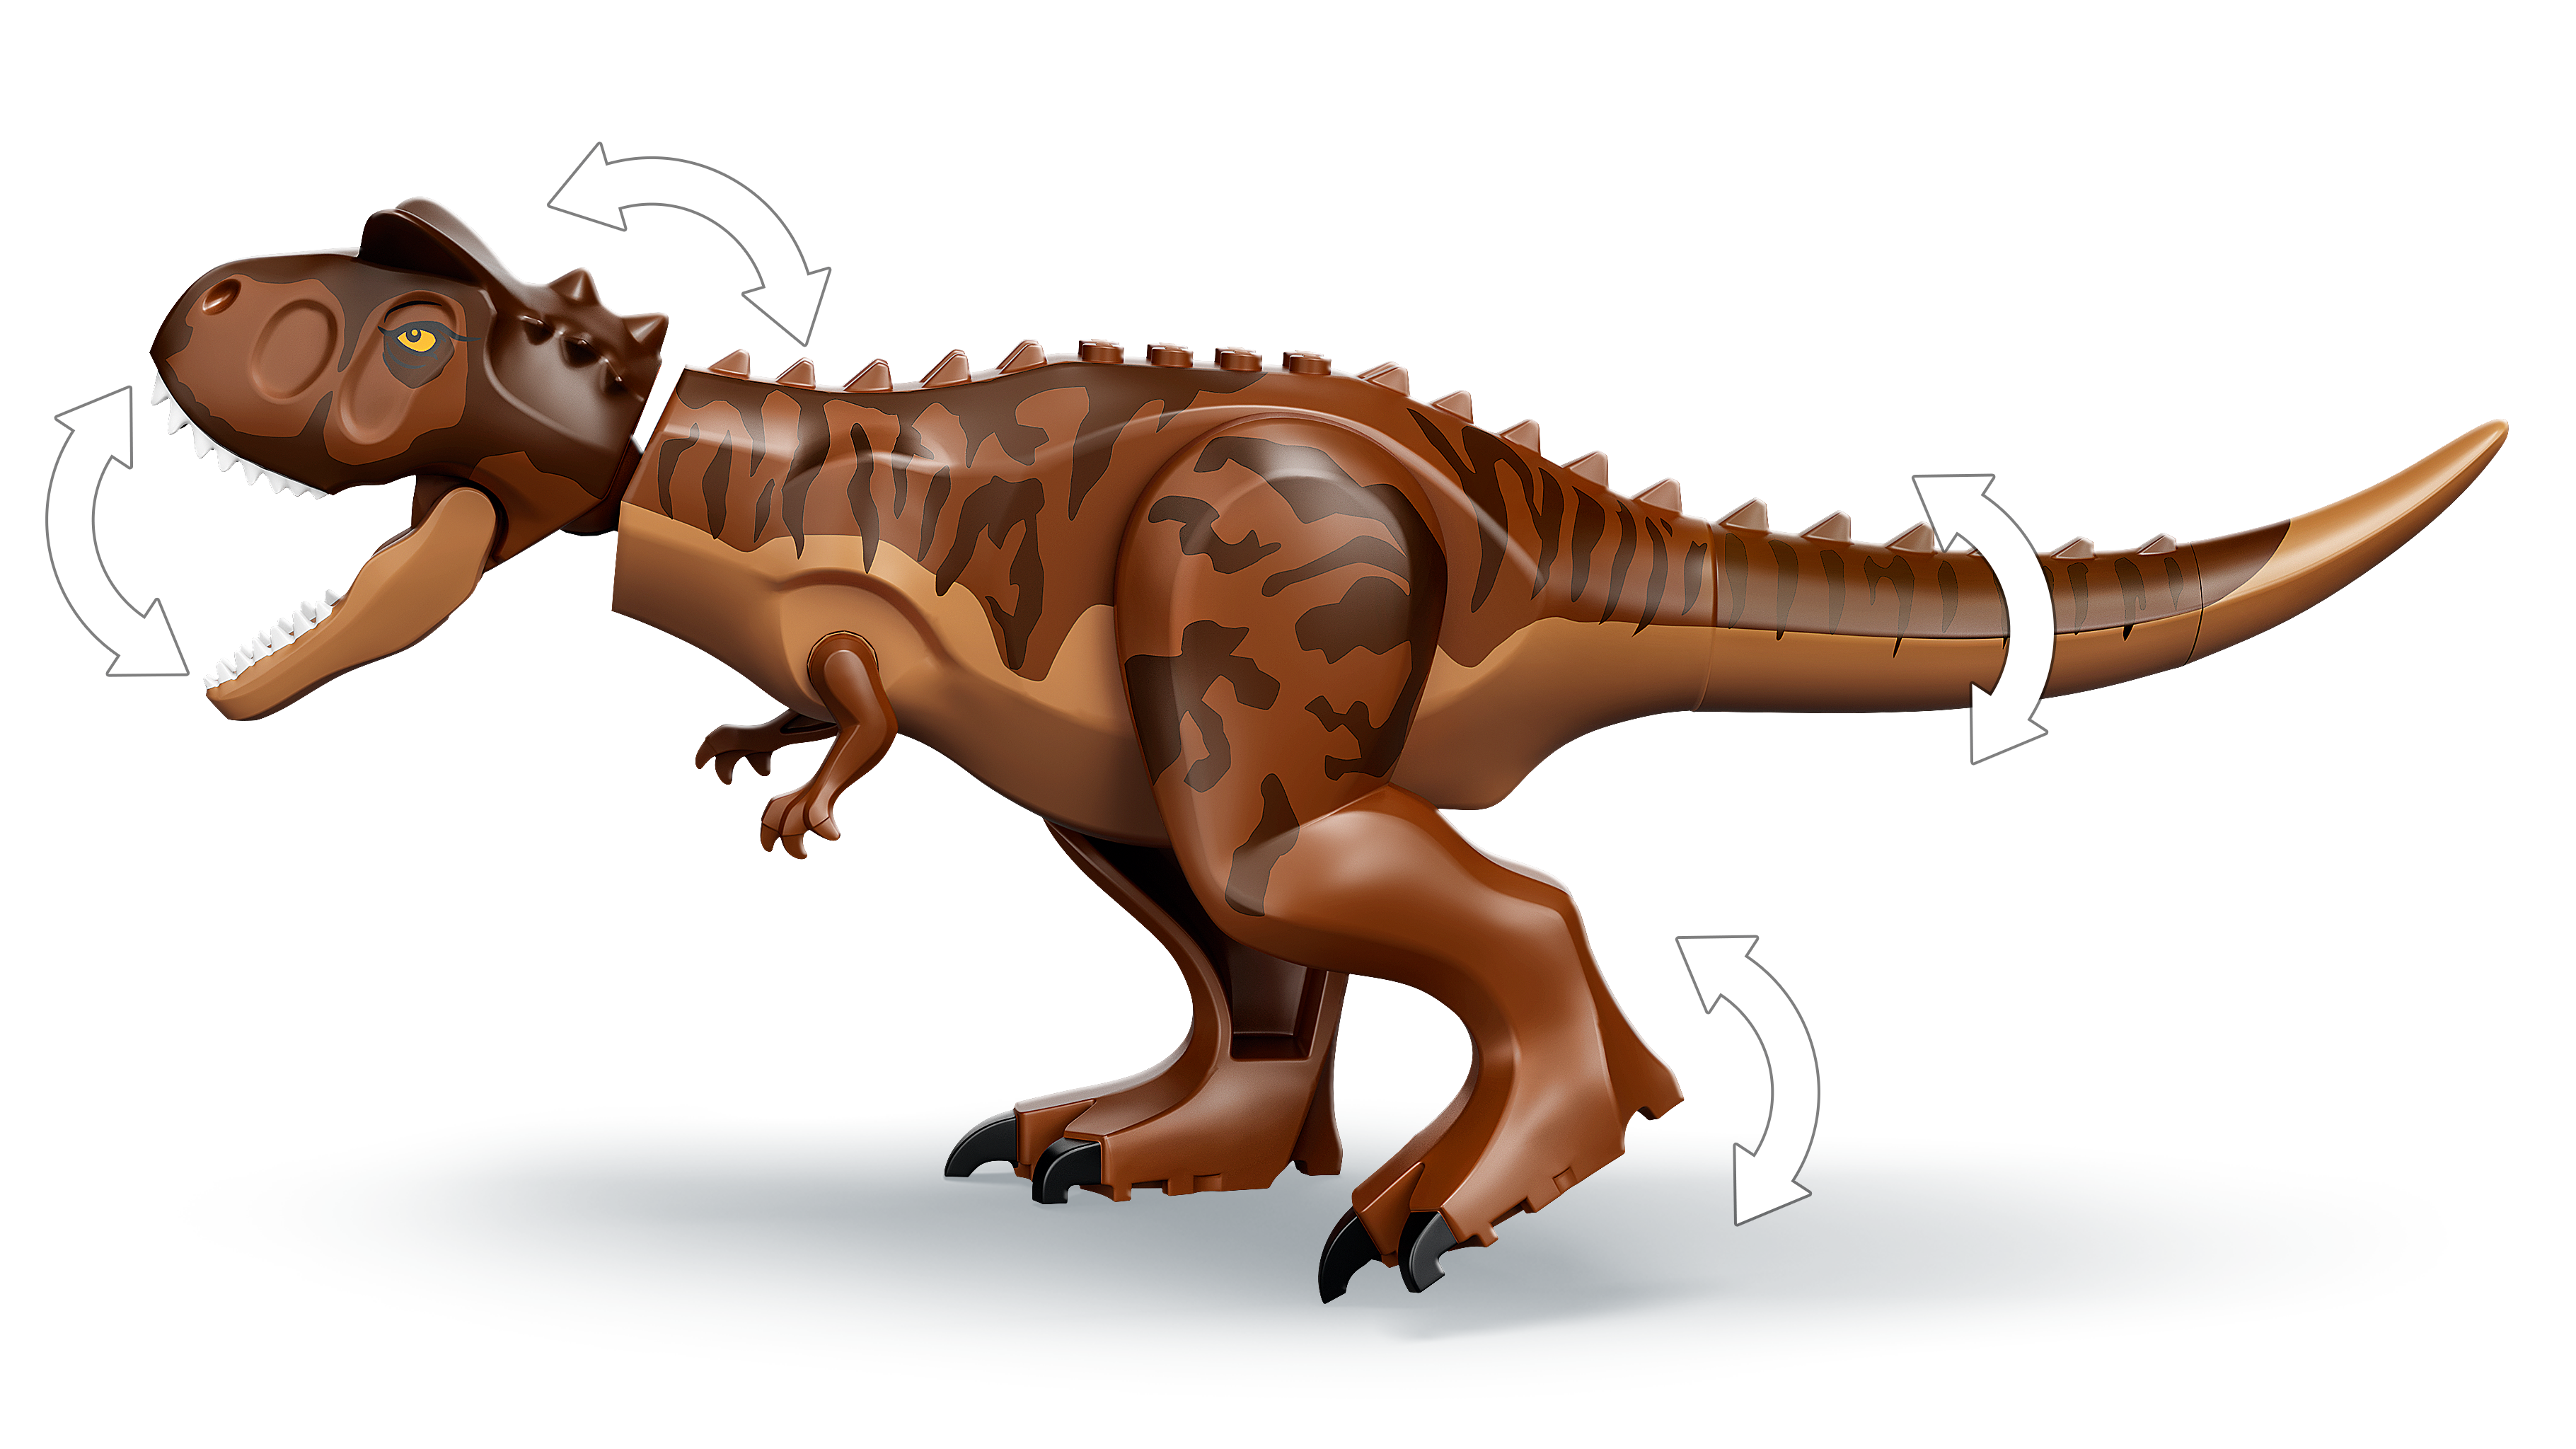 Lego Jurassic World 76941 Minifigur Carnotaurus Carn02 Neuware New 